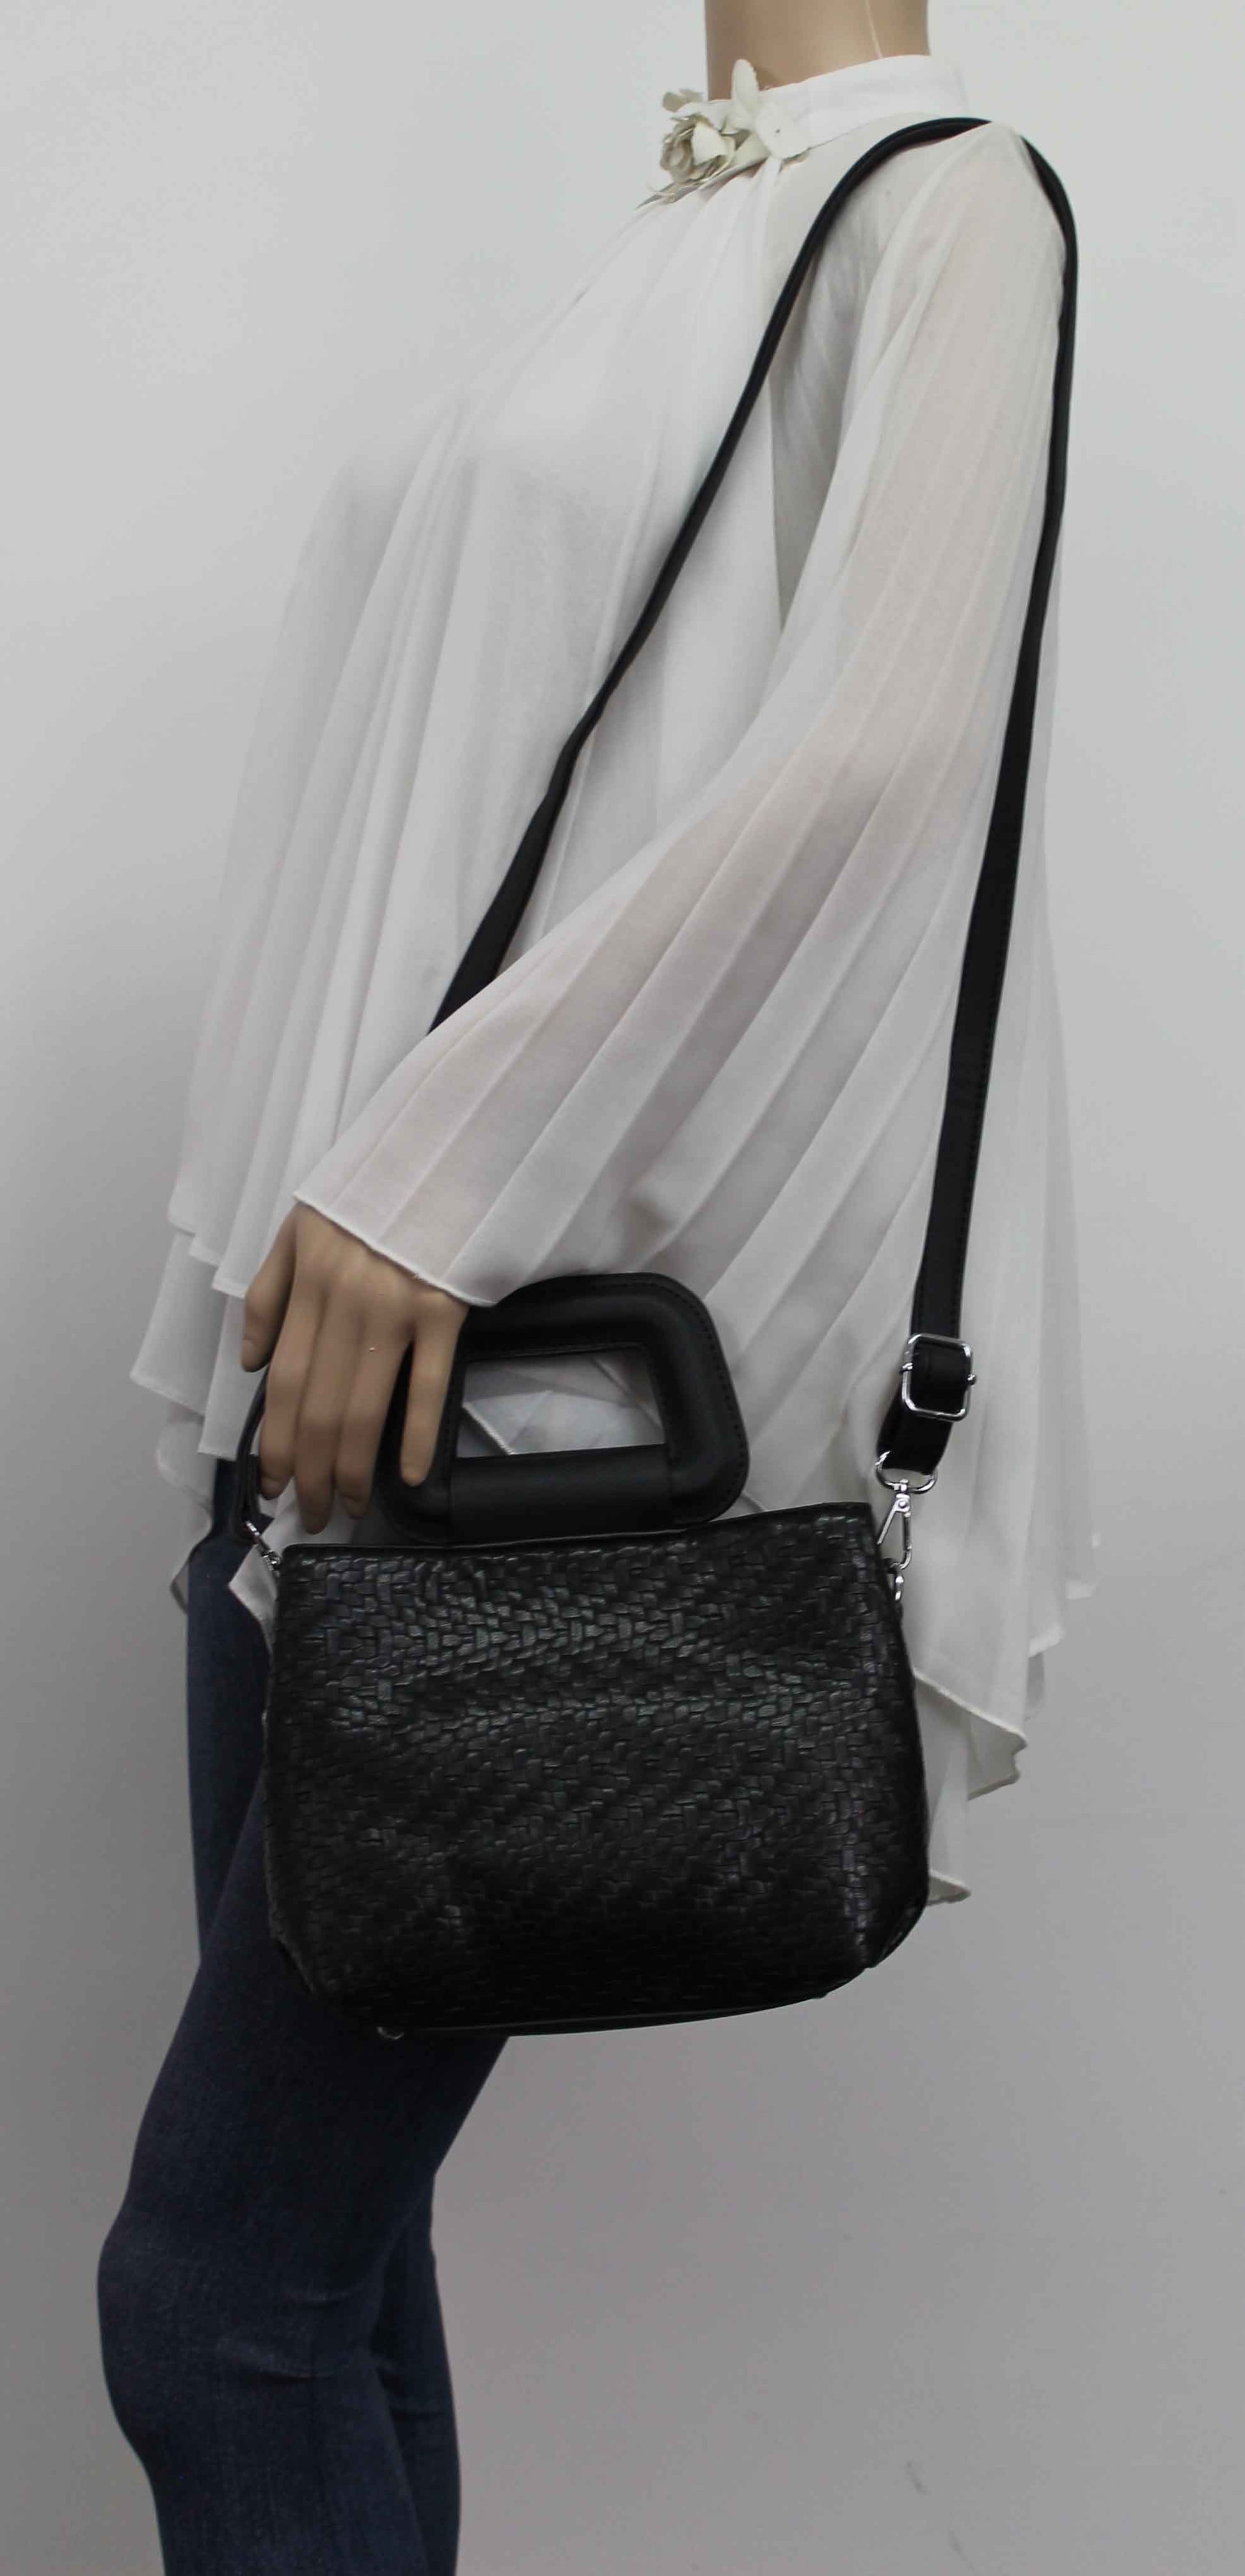 SWANKYSWANS Dahlia Clutch Bag Black Cute Cheap Clutch Bag For Weddings School and Work